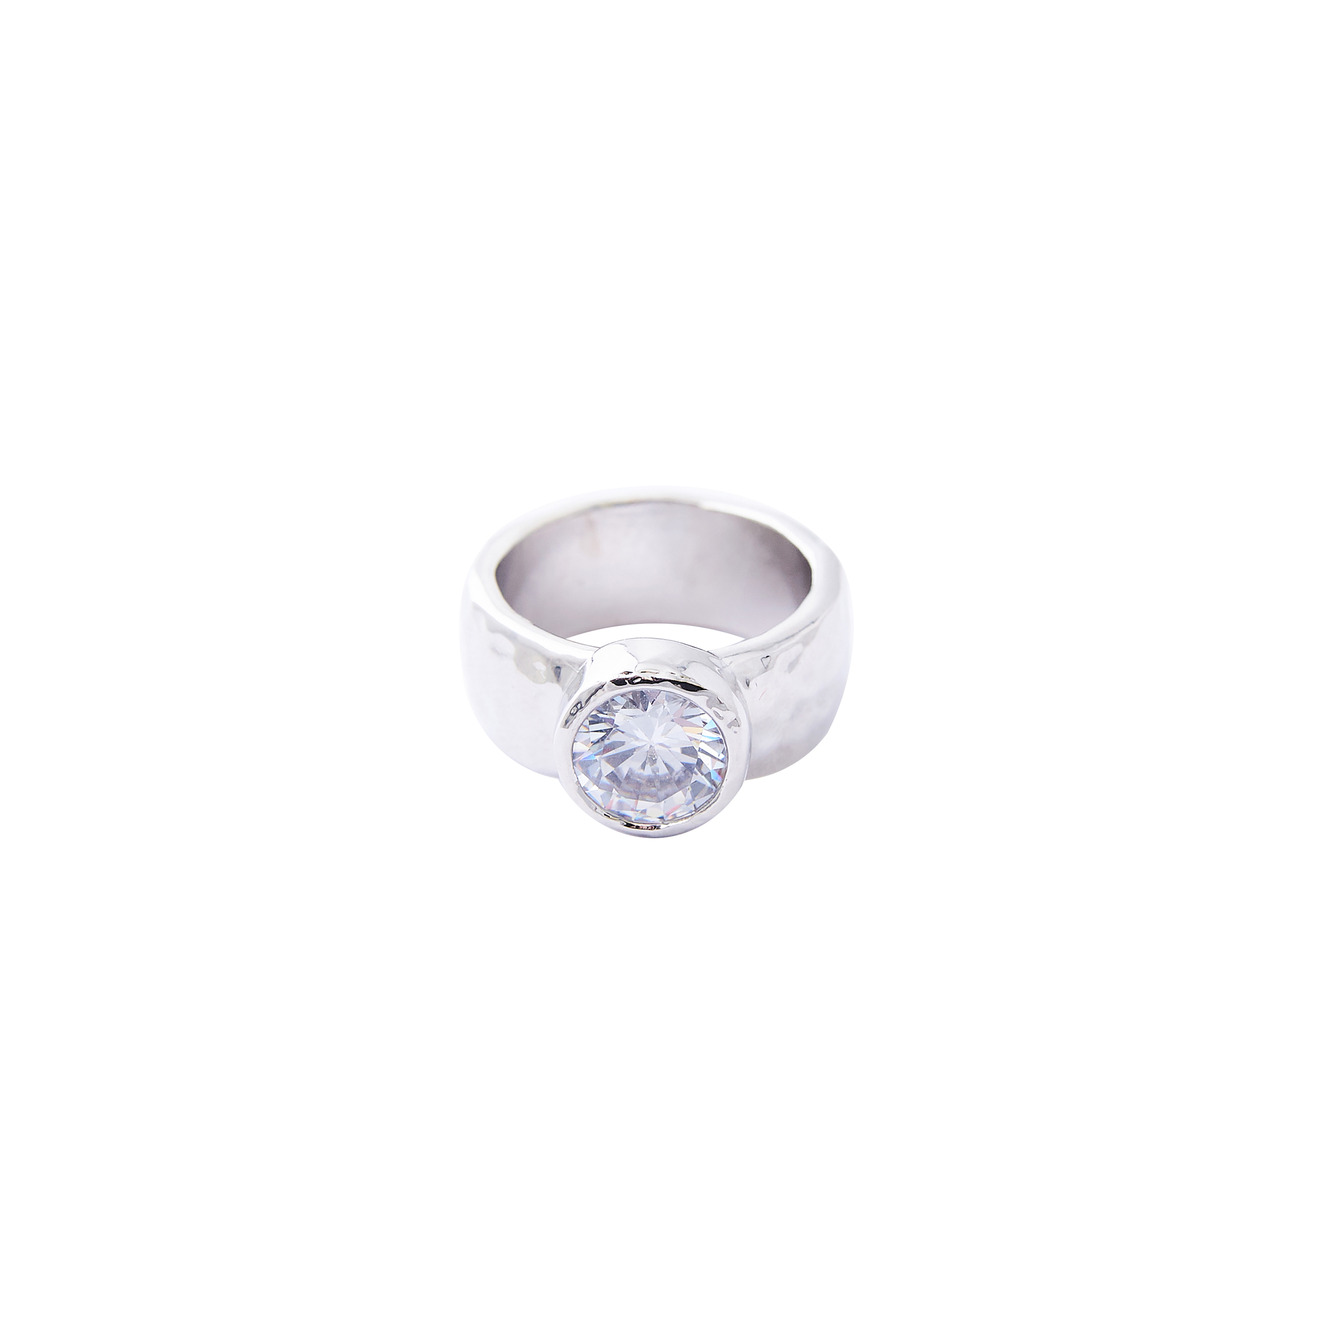 Herald Percy Серебристое высокое кольцо с крупным кристаллом herald percy золотистая цепочка с подвеской сердцем с кристаллом